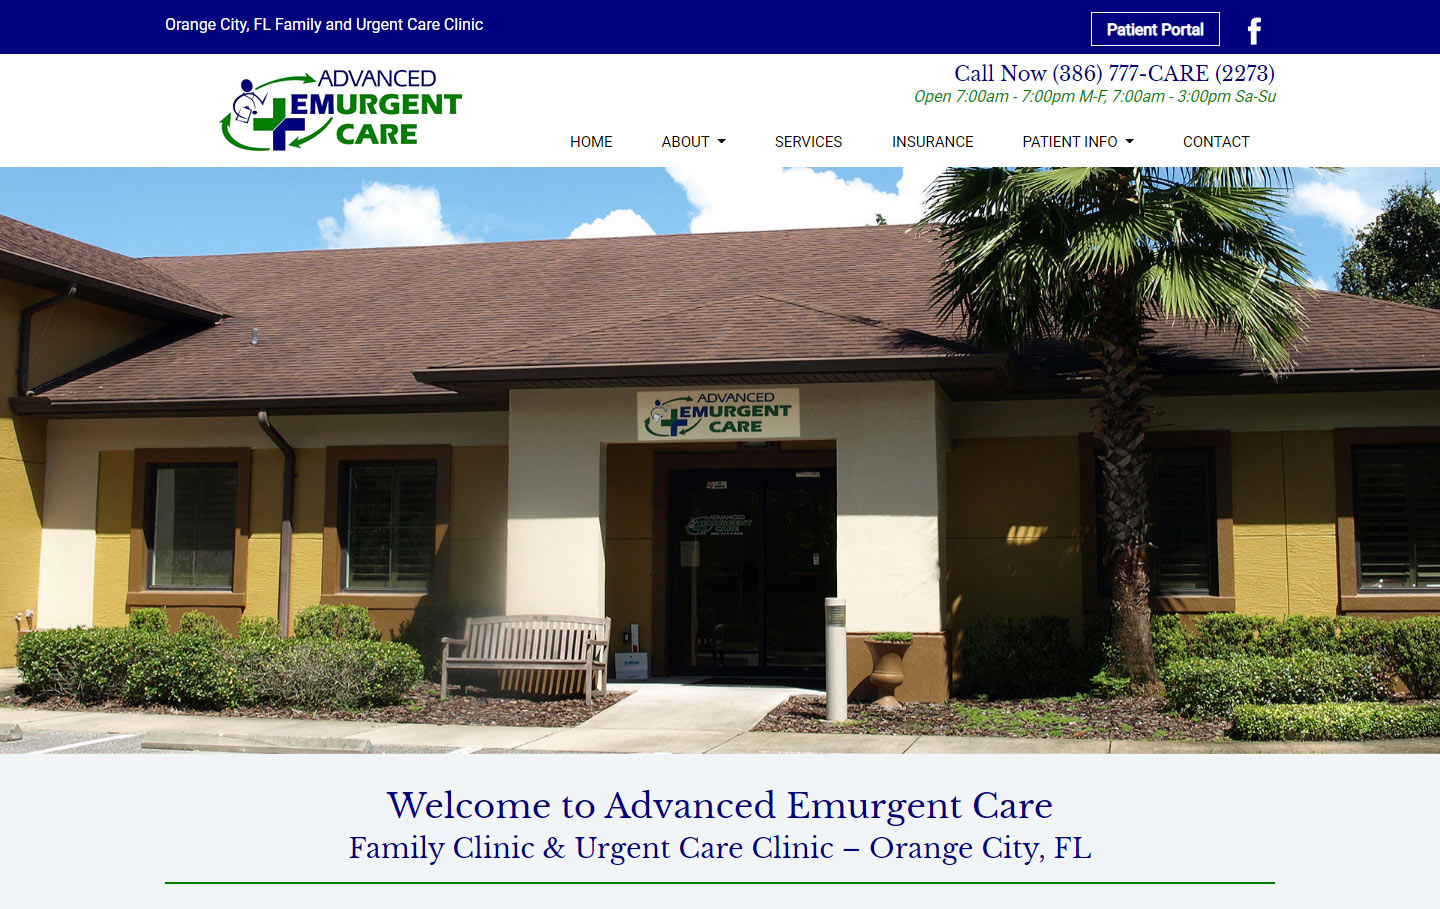 Advanced Emurgent Care